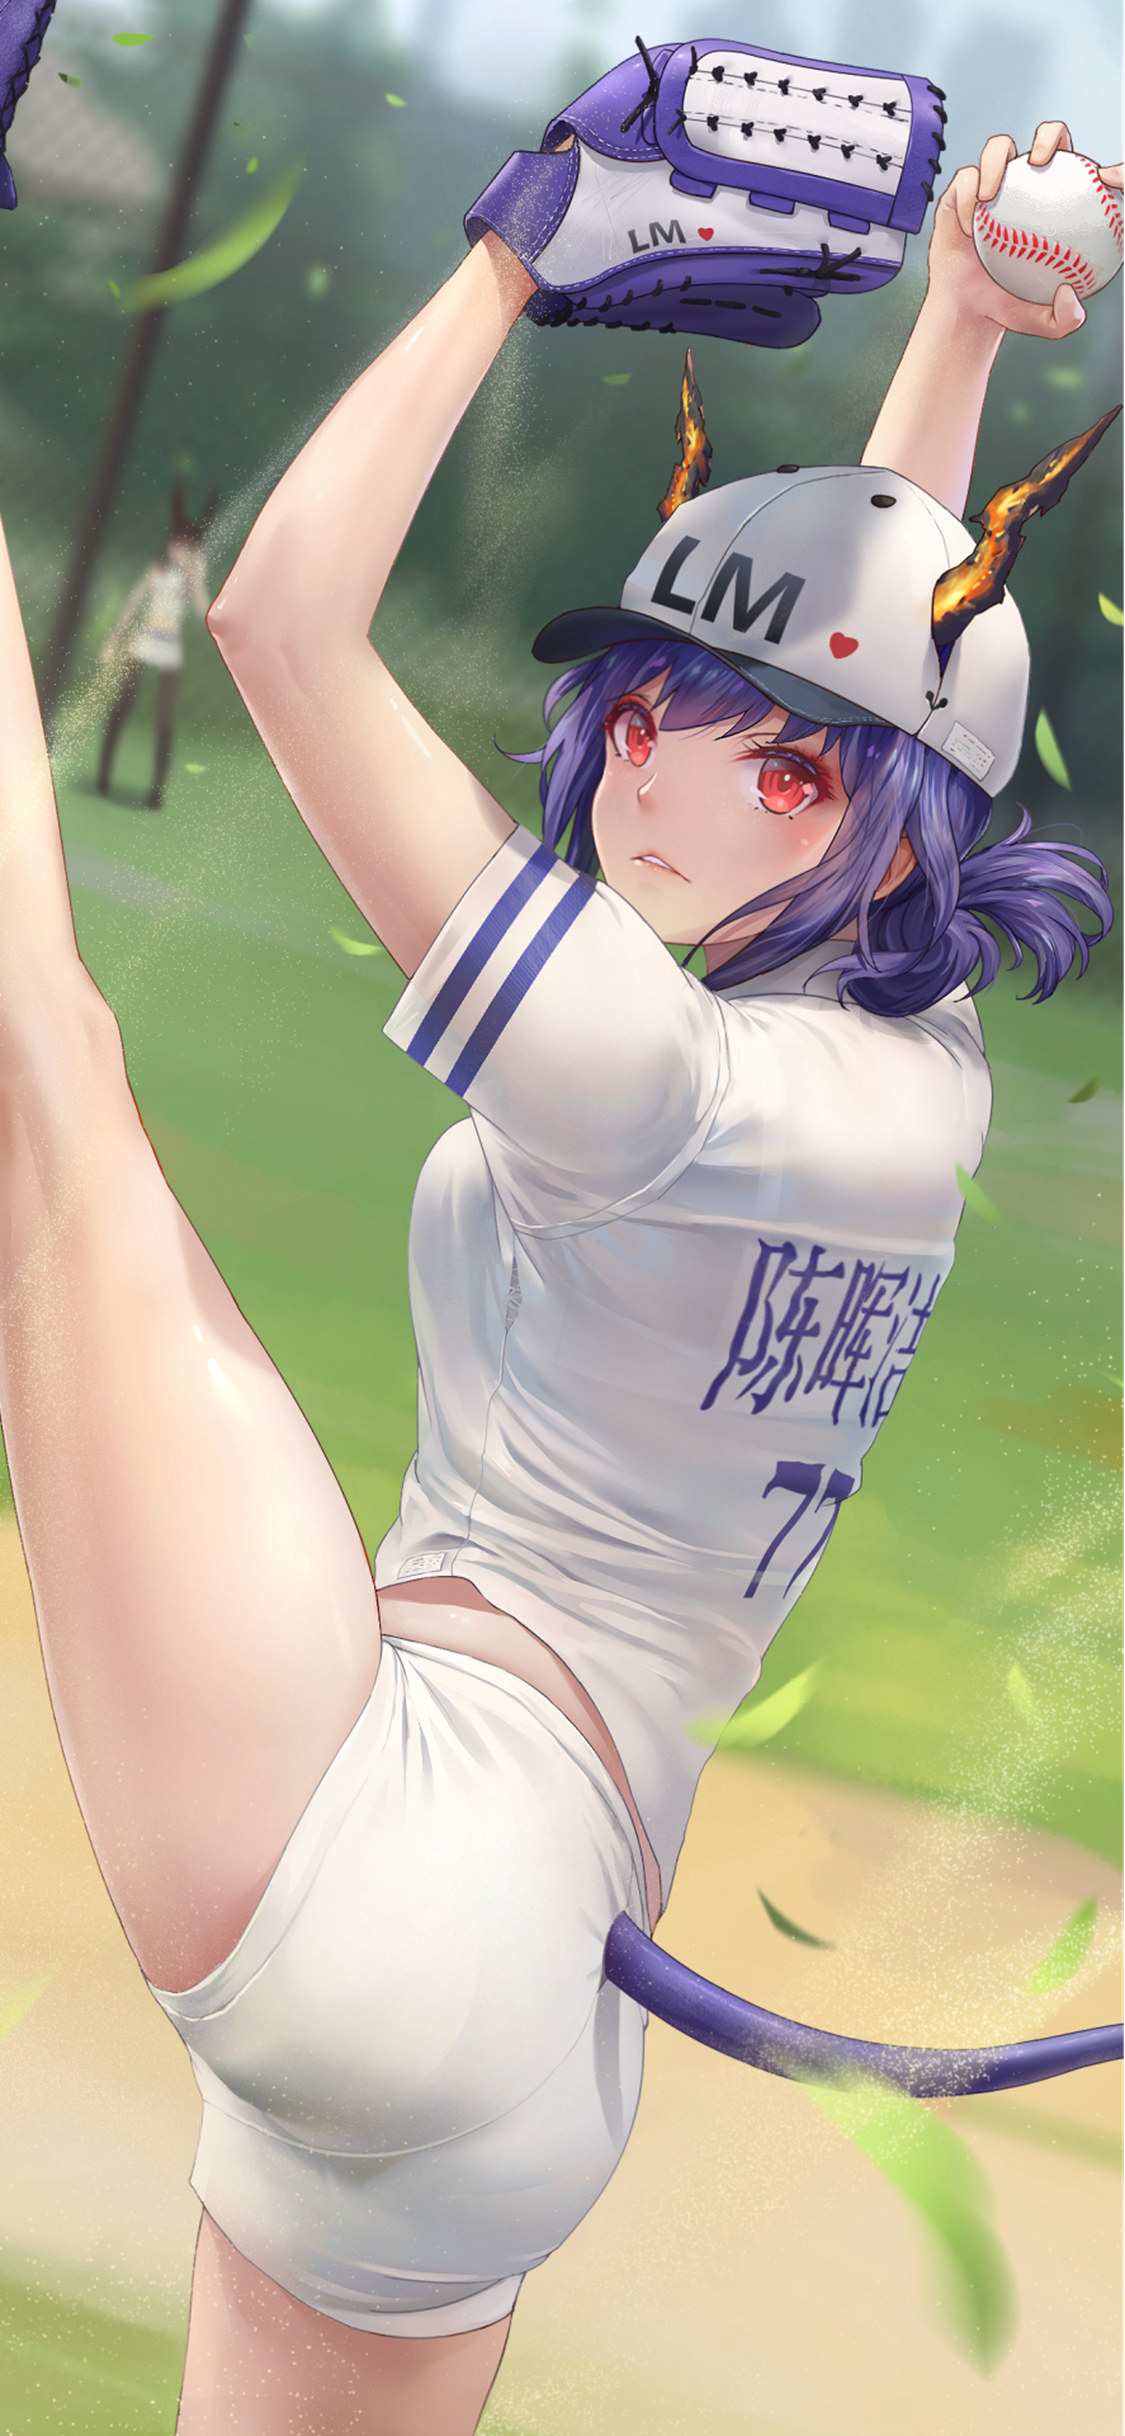 青春靓丽的紫发动漫女棒球手壁纸